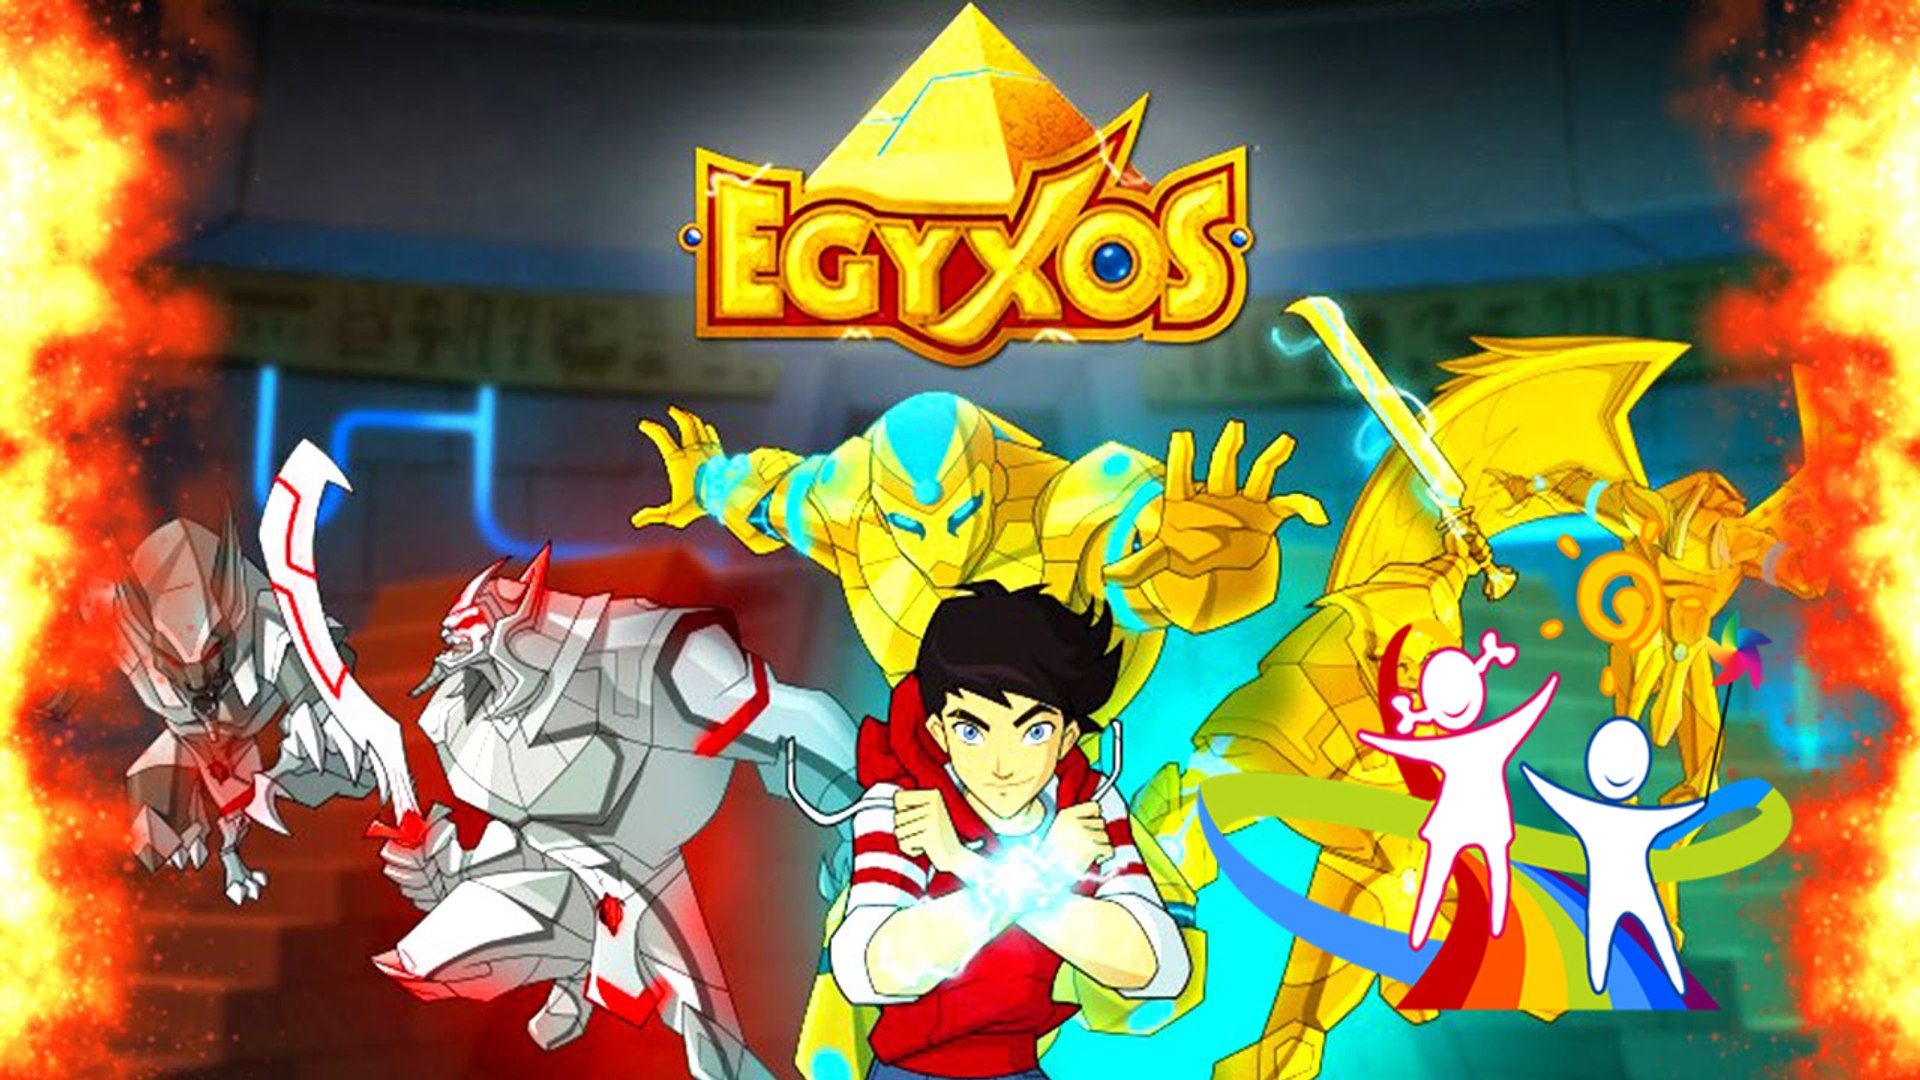 المعركة الحاسمة - قوات ايجكسوس الحلقة 6 - Egyxos - فيديو Dailymotion